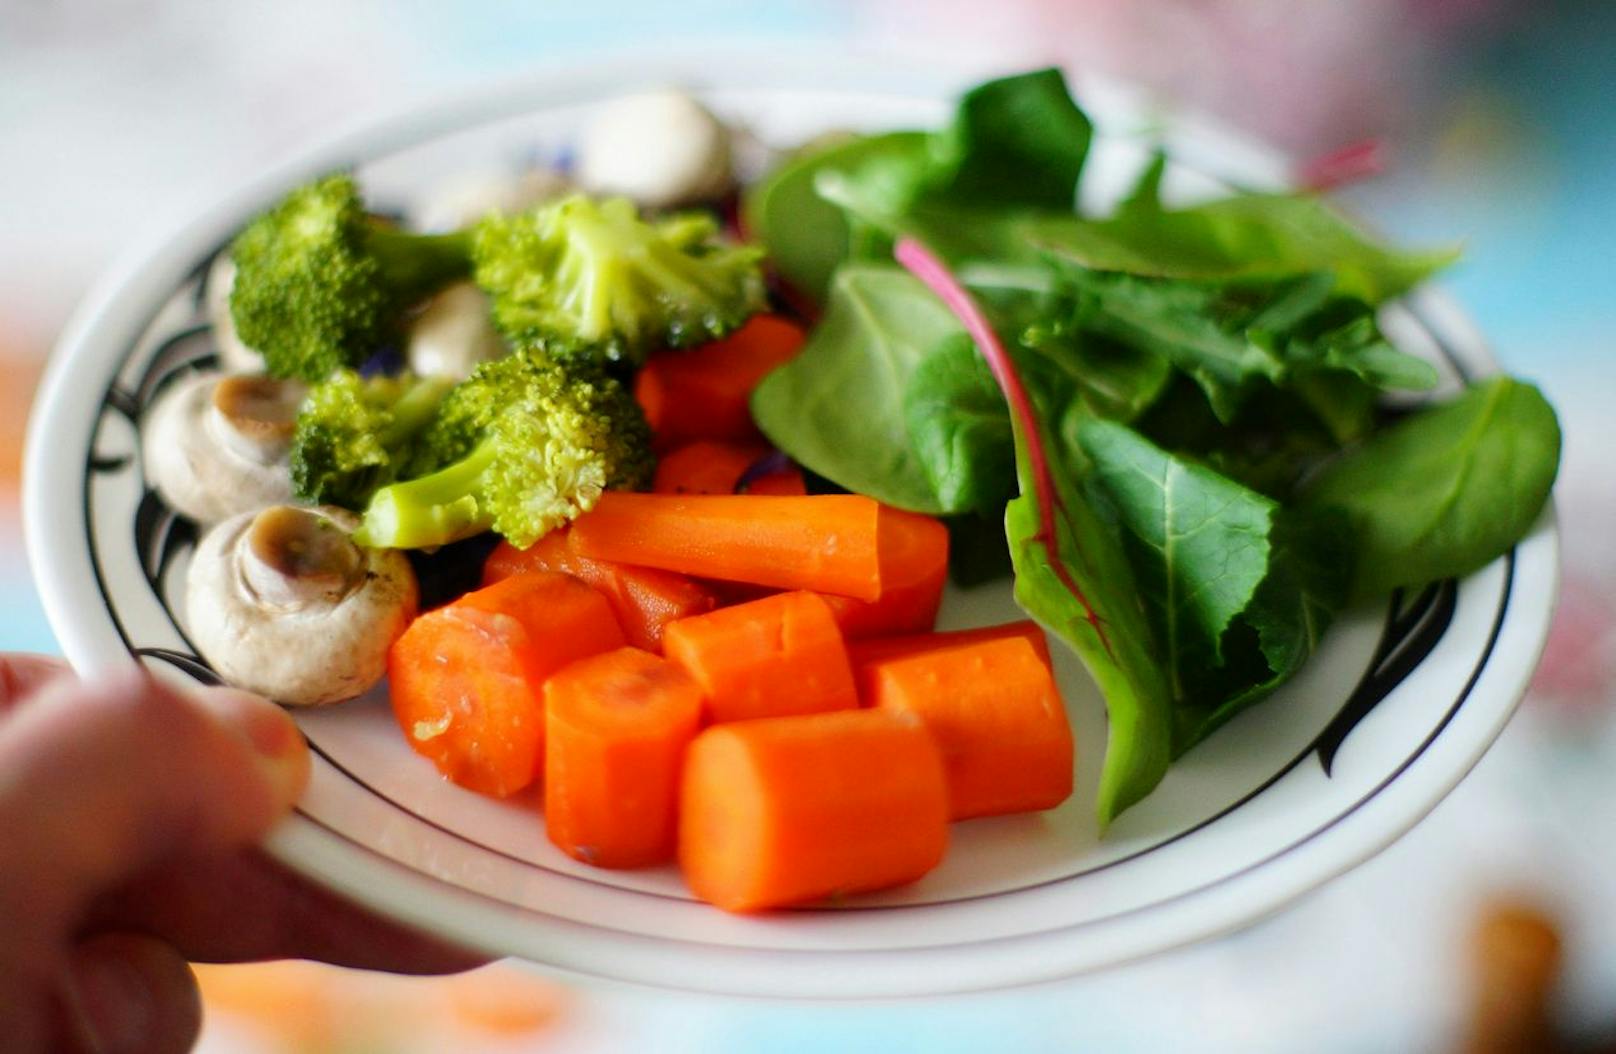 Was bereits paniert und frittiert wurd,e ist besonders kalorienhaltig. Damit dein Körper nicht den ganzen Tag mit der Fettverdauung beschäftigt ist, solltest du lieber Sojaprodukte in Kombination mit gedünstetem Gemüse wählen.